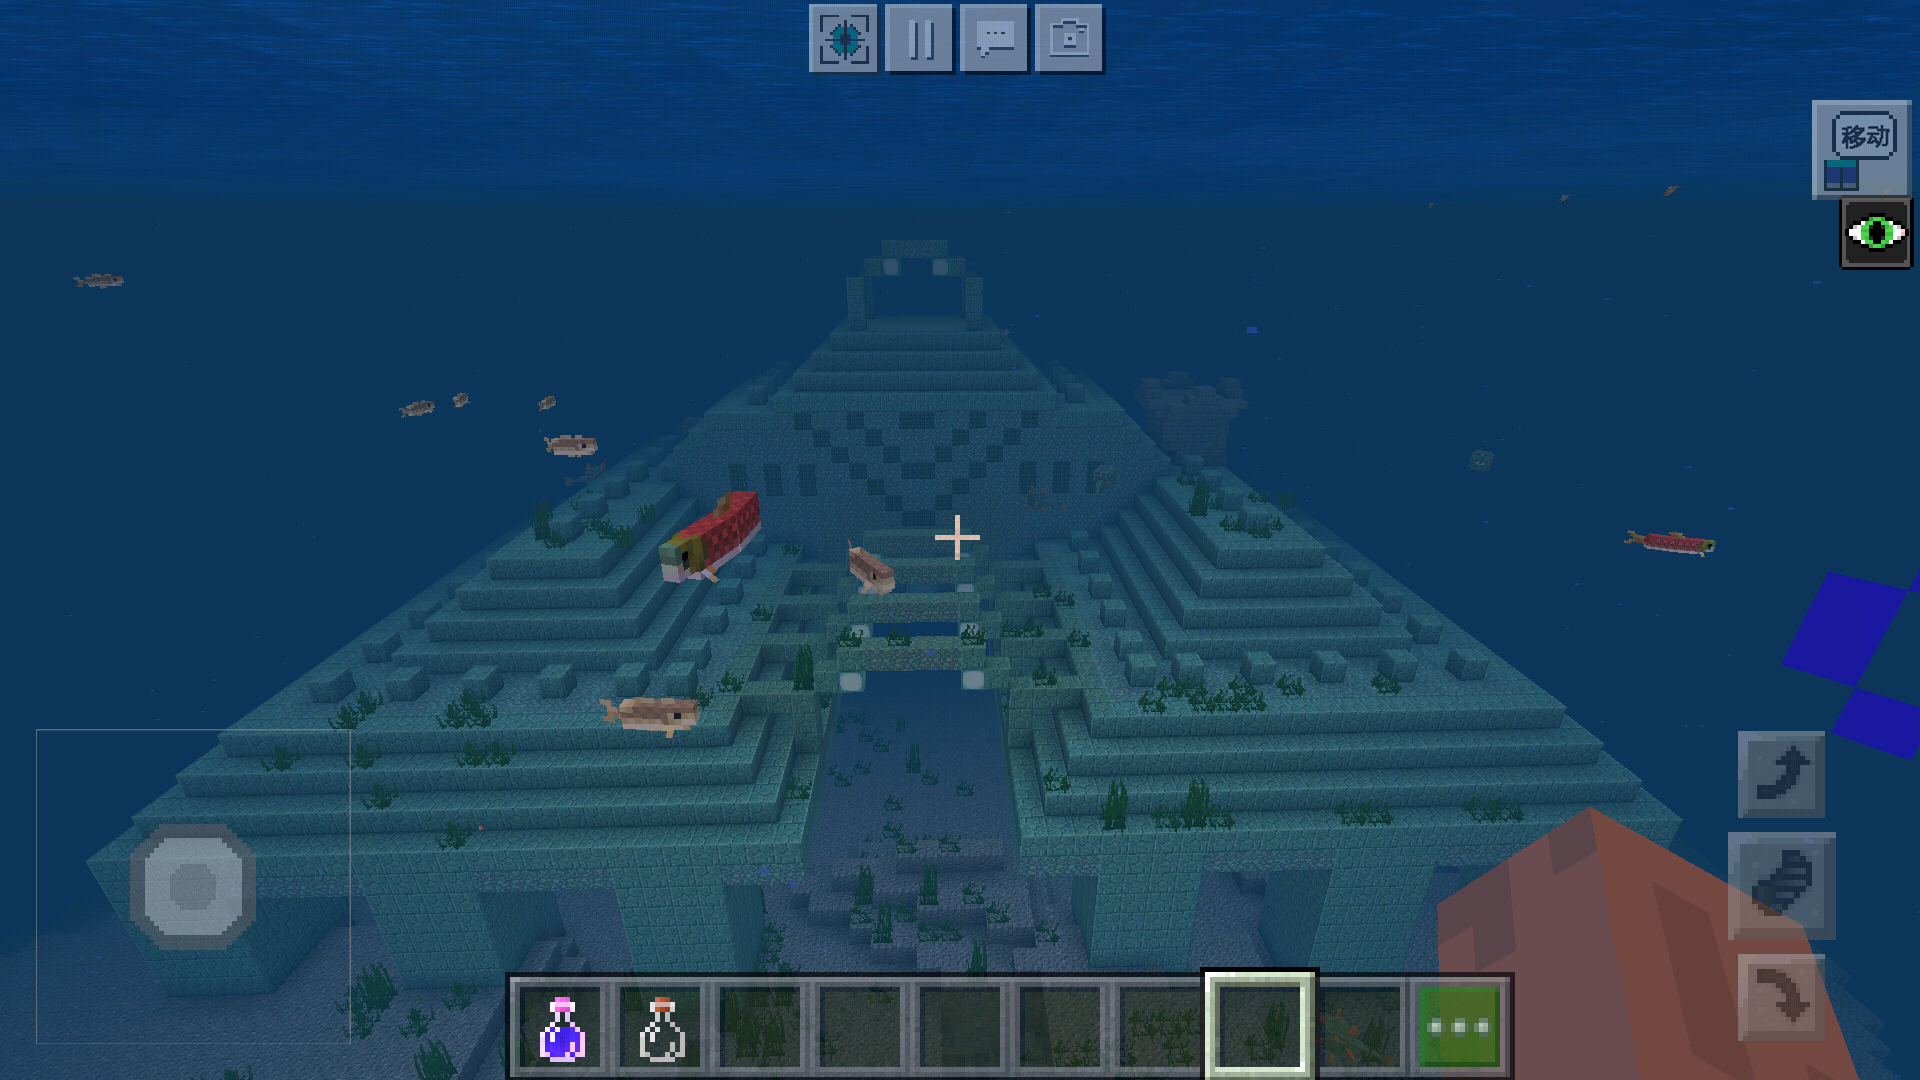 我的世界:海底神殿好壮观,就像一个城堡,新手第一次看到